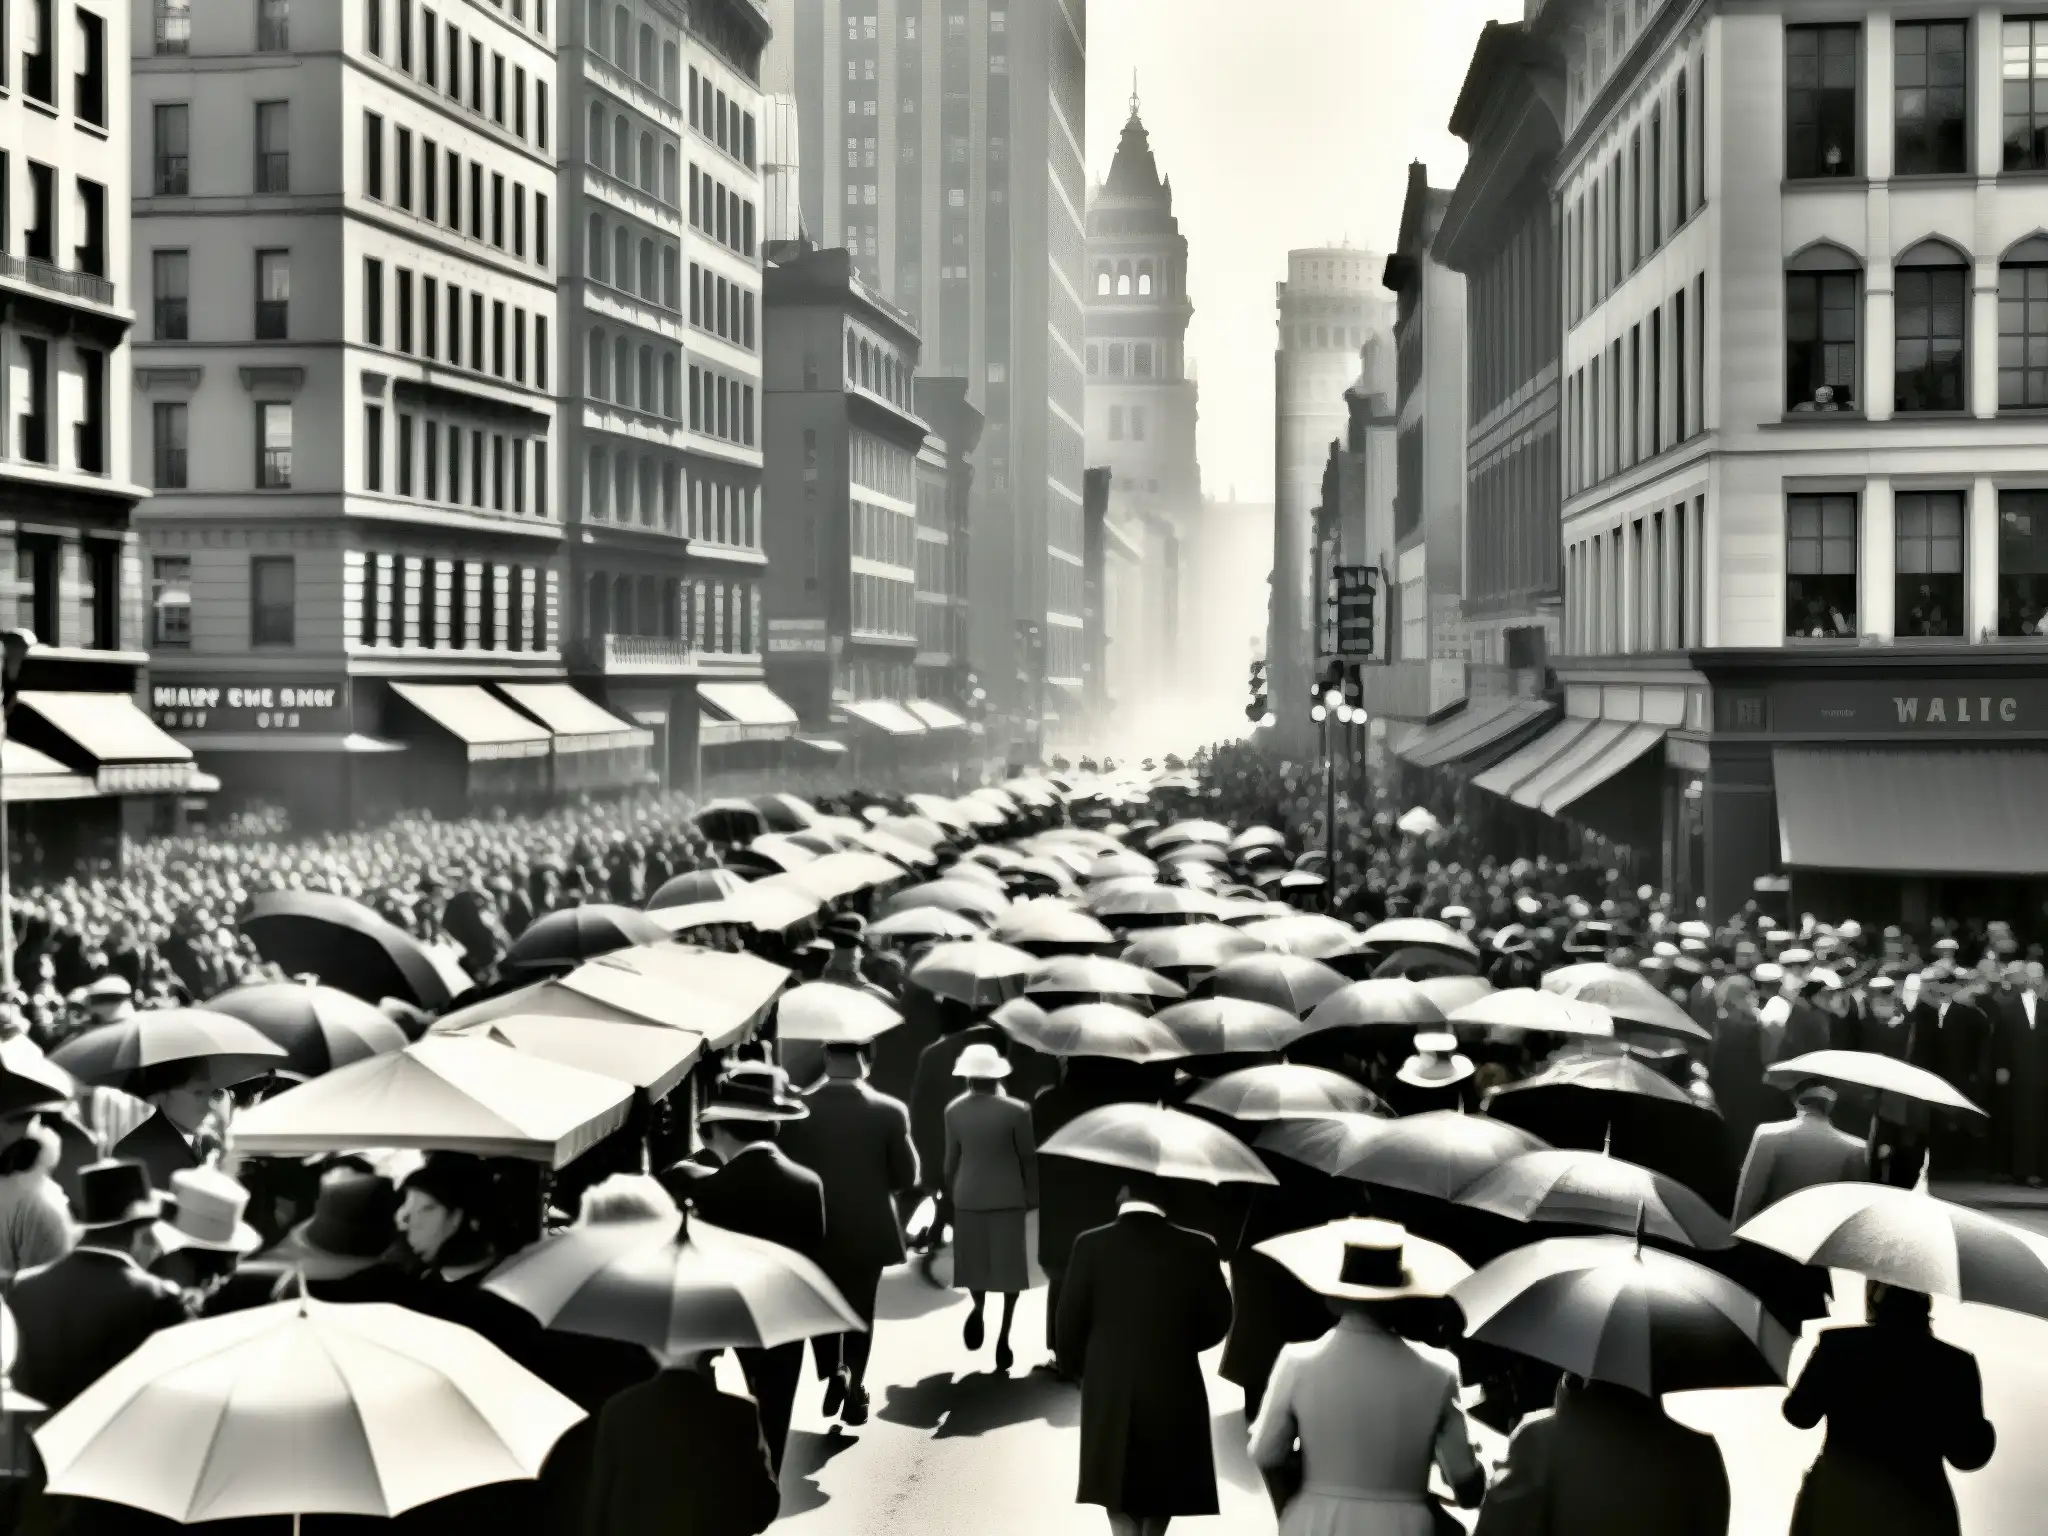 Imagen en blanco y negro de una bulliciosa calle urbana del siglo XX con edificios altos y gente variada caminando, algunos con paraguas y sombreros